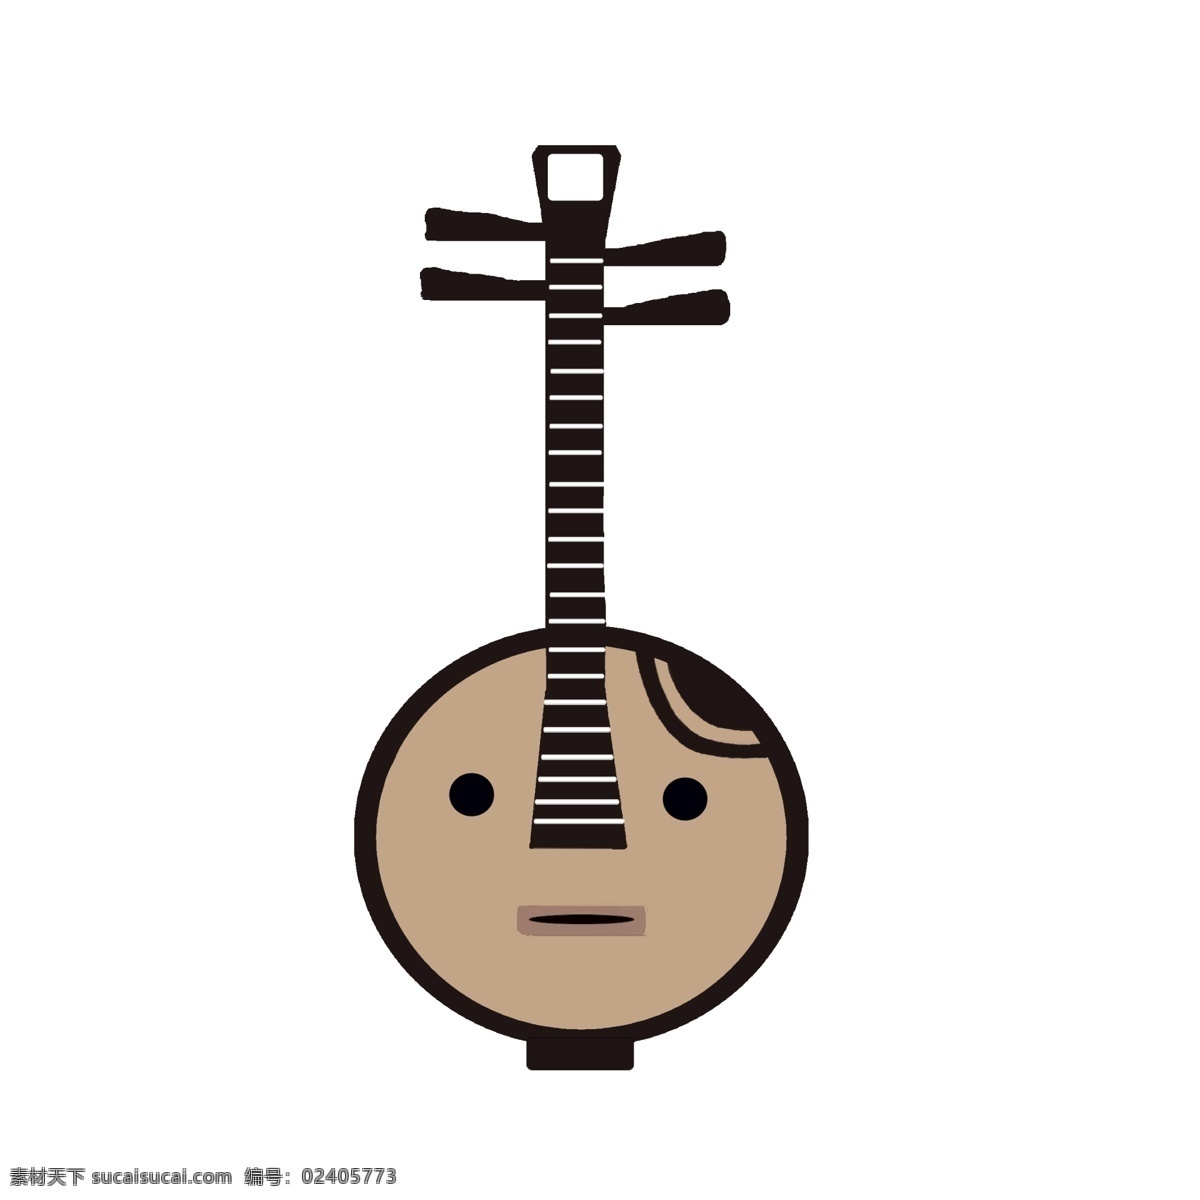 古典 乐器 吉他 插图 立体吉他 乐器吉他 卡通乐器 卡通吉他 古典乐器 古典吉他 吉他乐器 民谣乐器